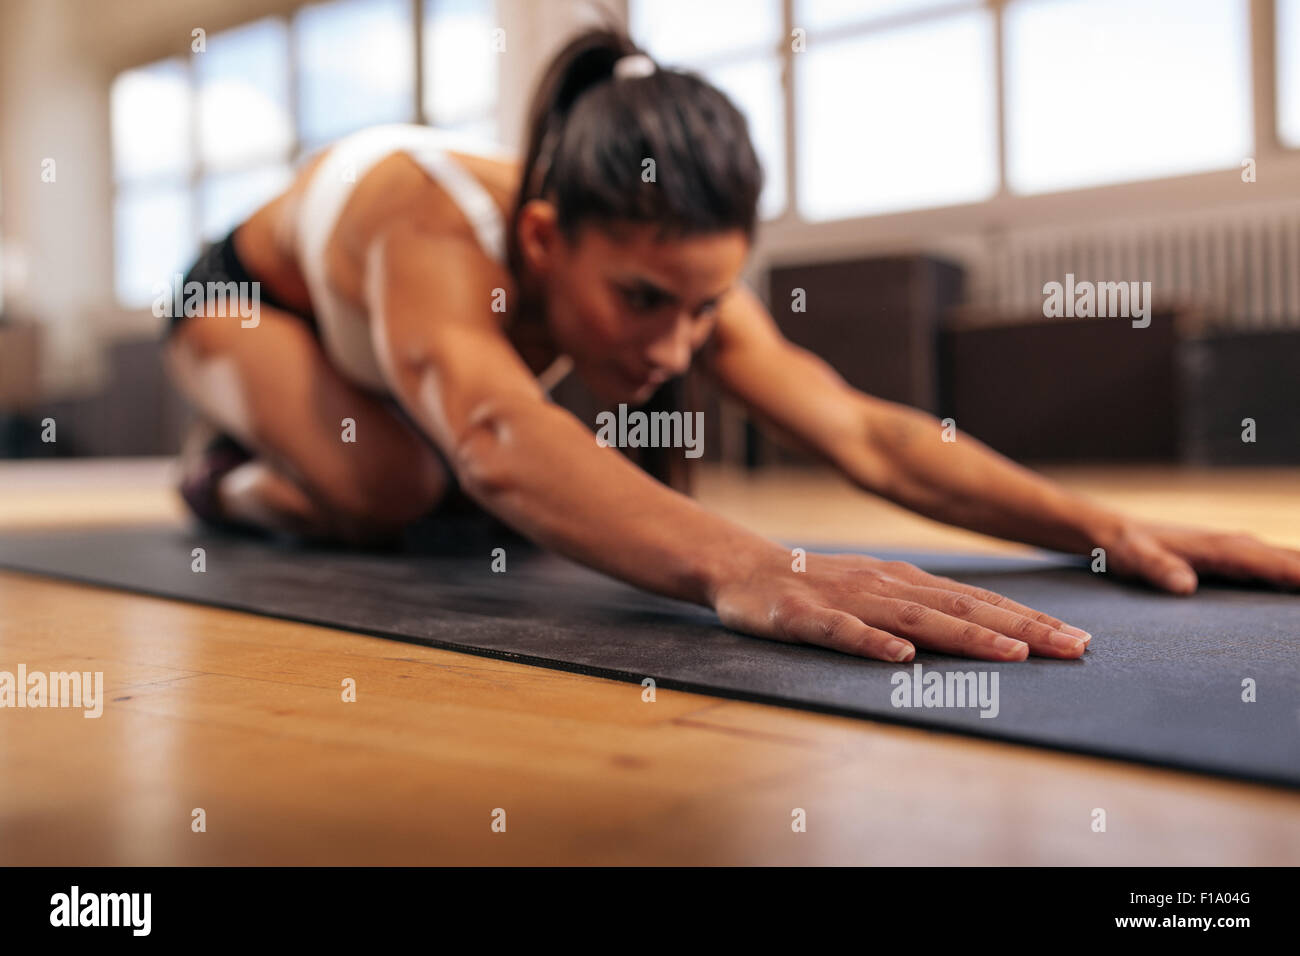 Frau tut stretching Workout auf Fitness-Matte, Fokus auf Händen, Fitness weiblich Yoga auf Gymnastikmatte in Turnhalle durchführen. Stockfoto